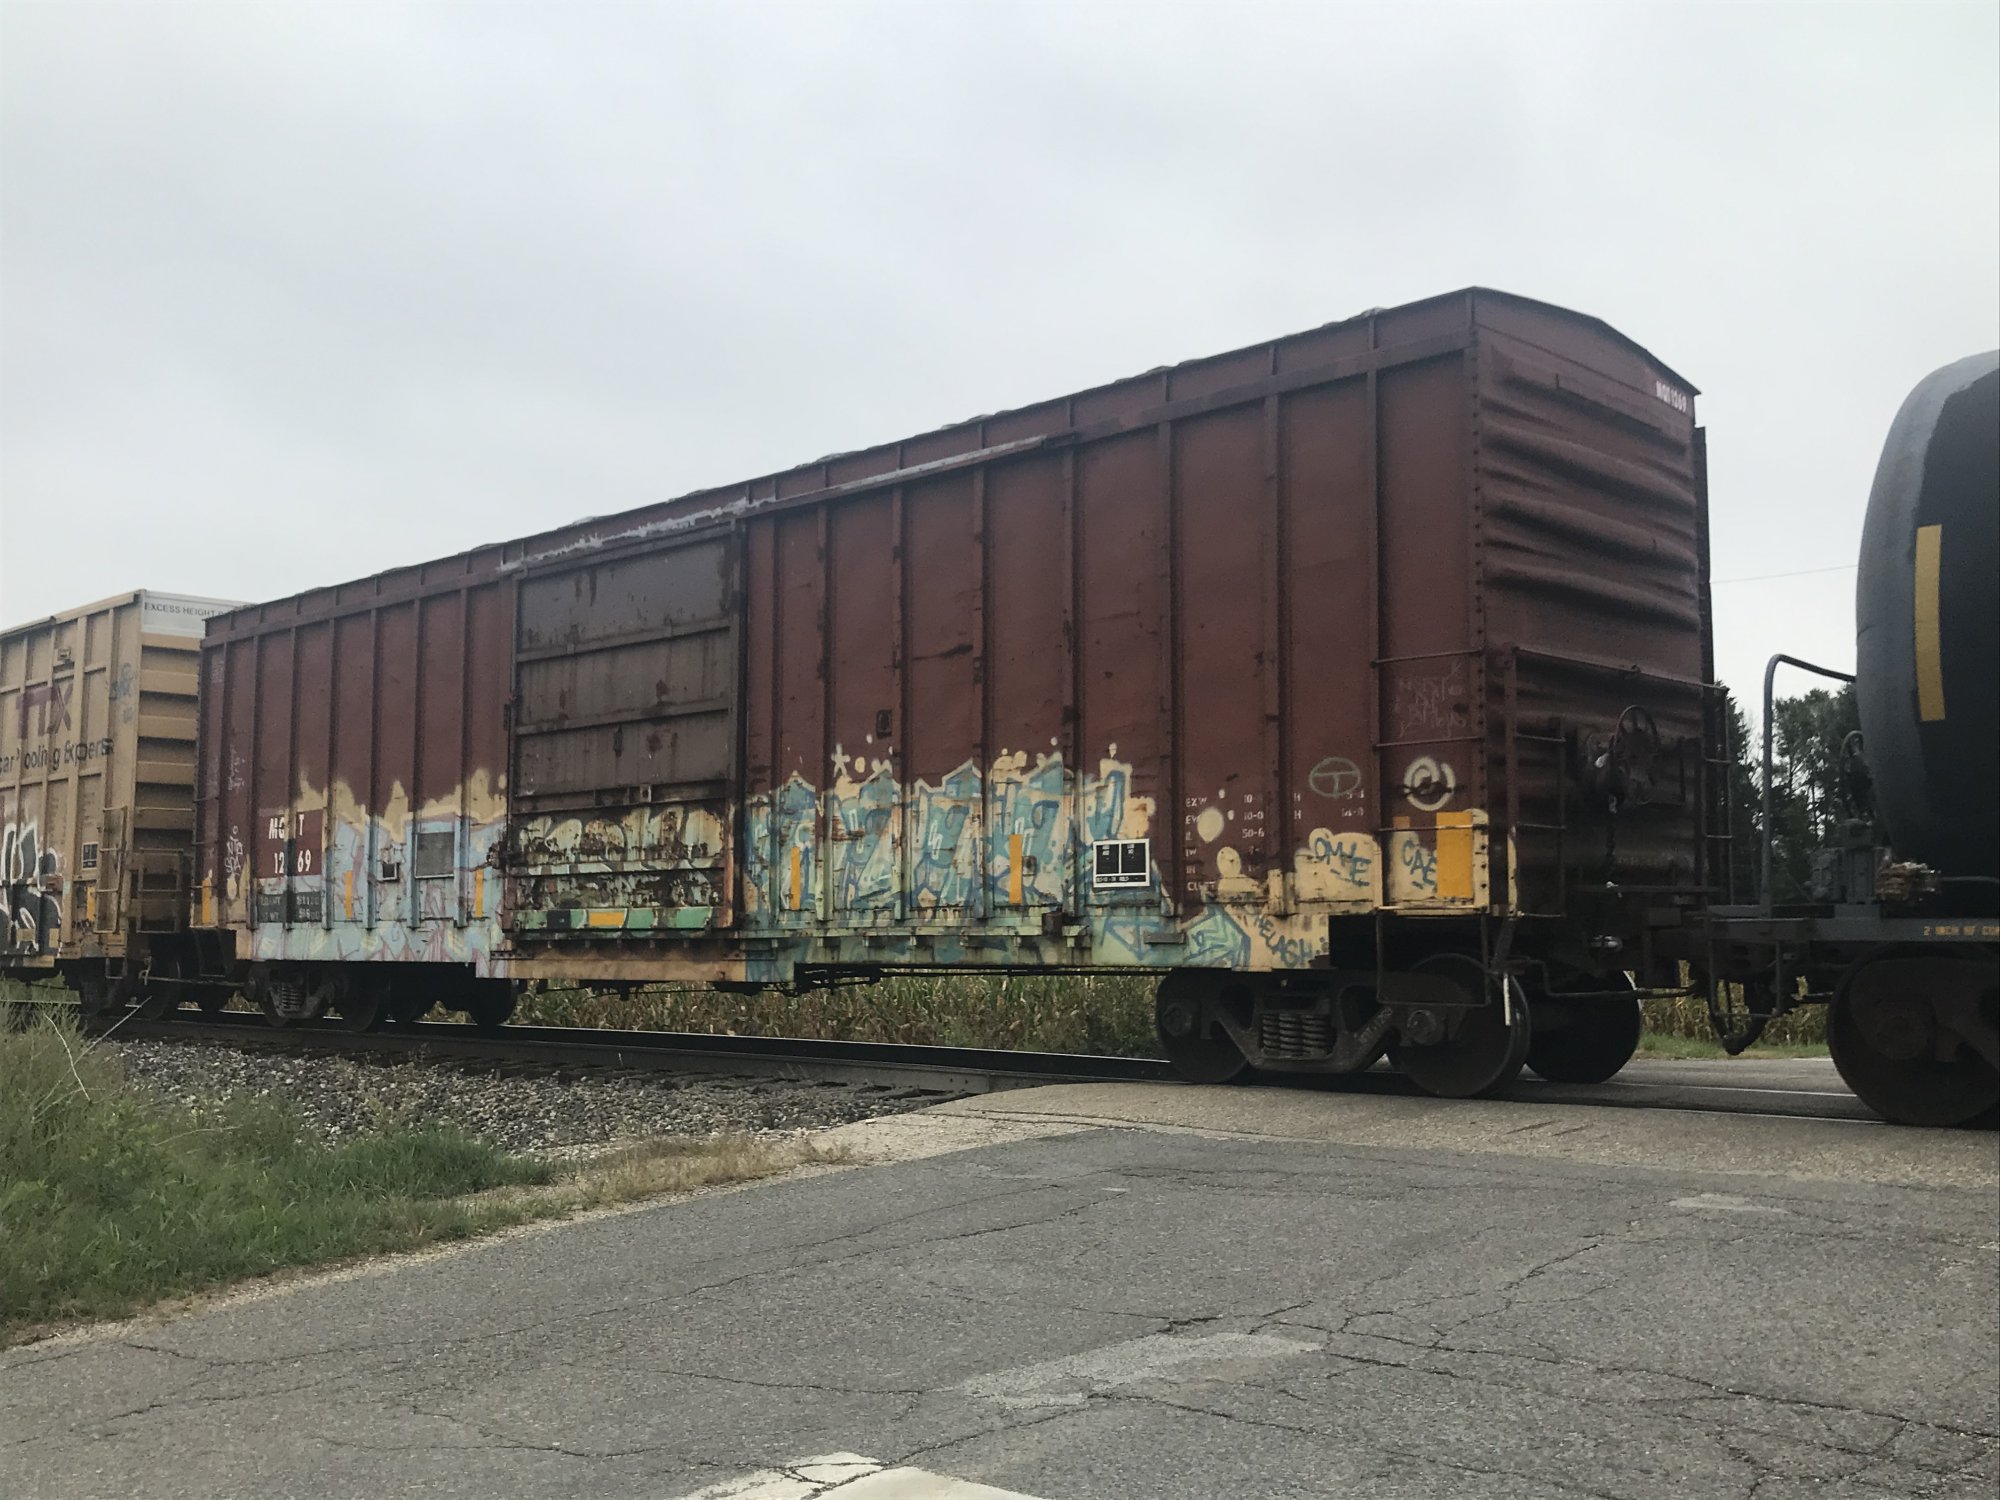 Brown Railbox Boxcar